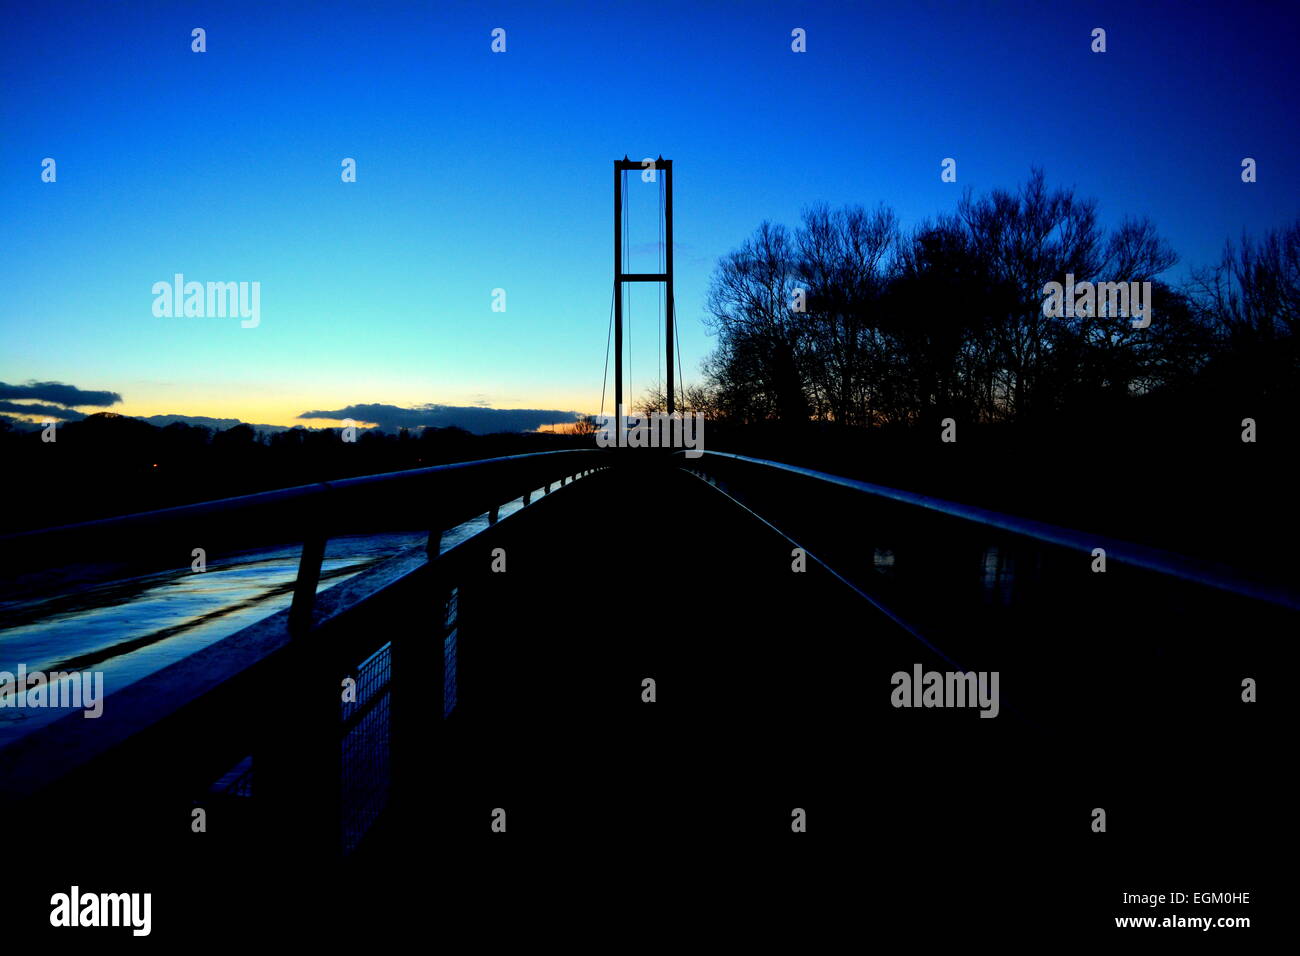 El puente azul y un paseo solitario. Foto de stock